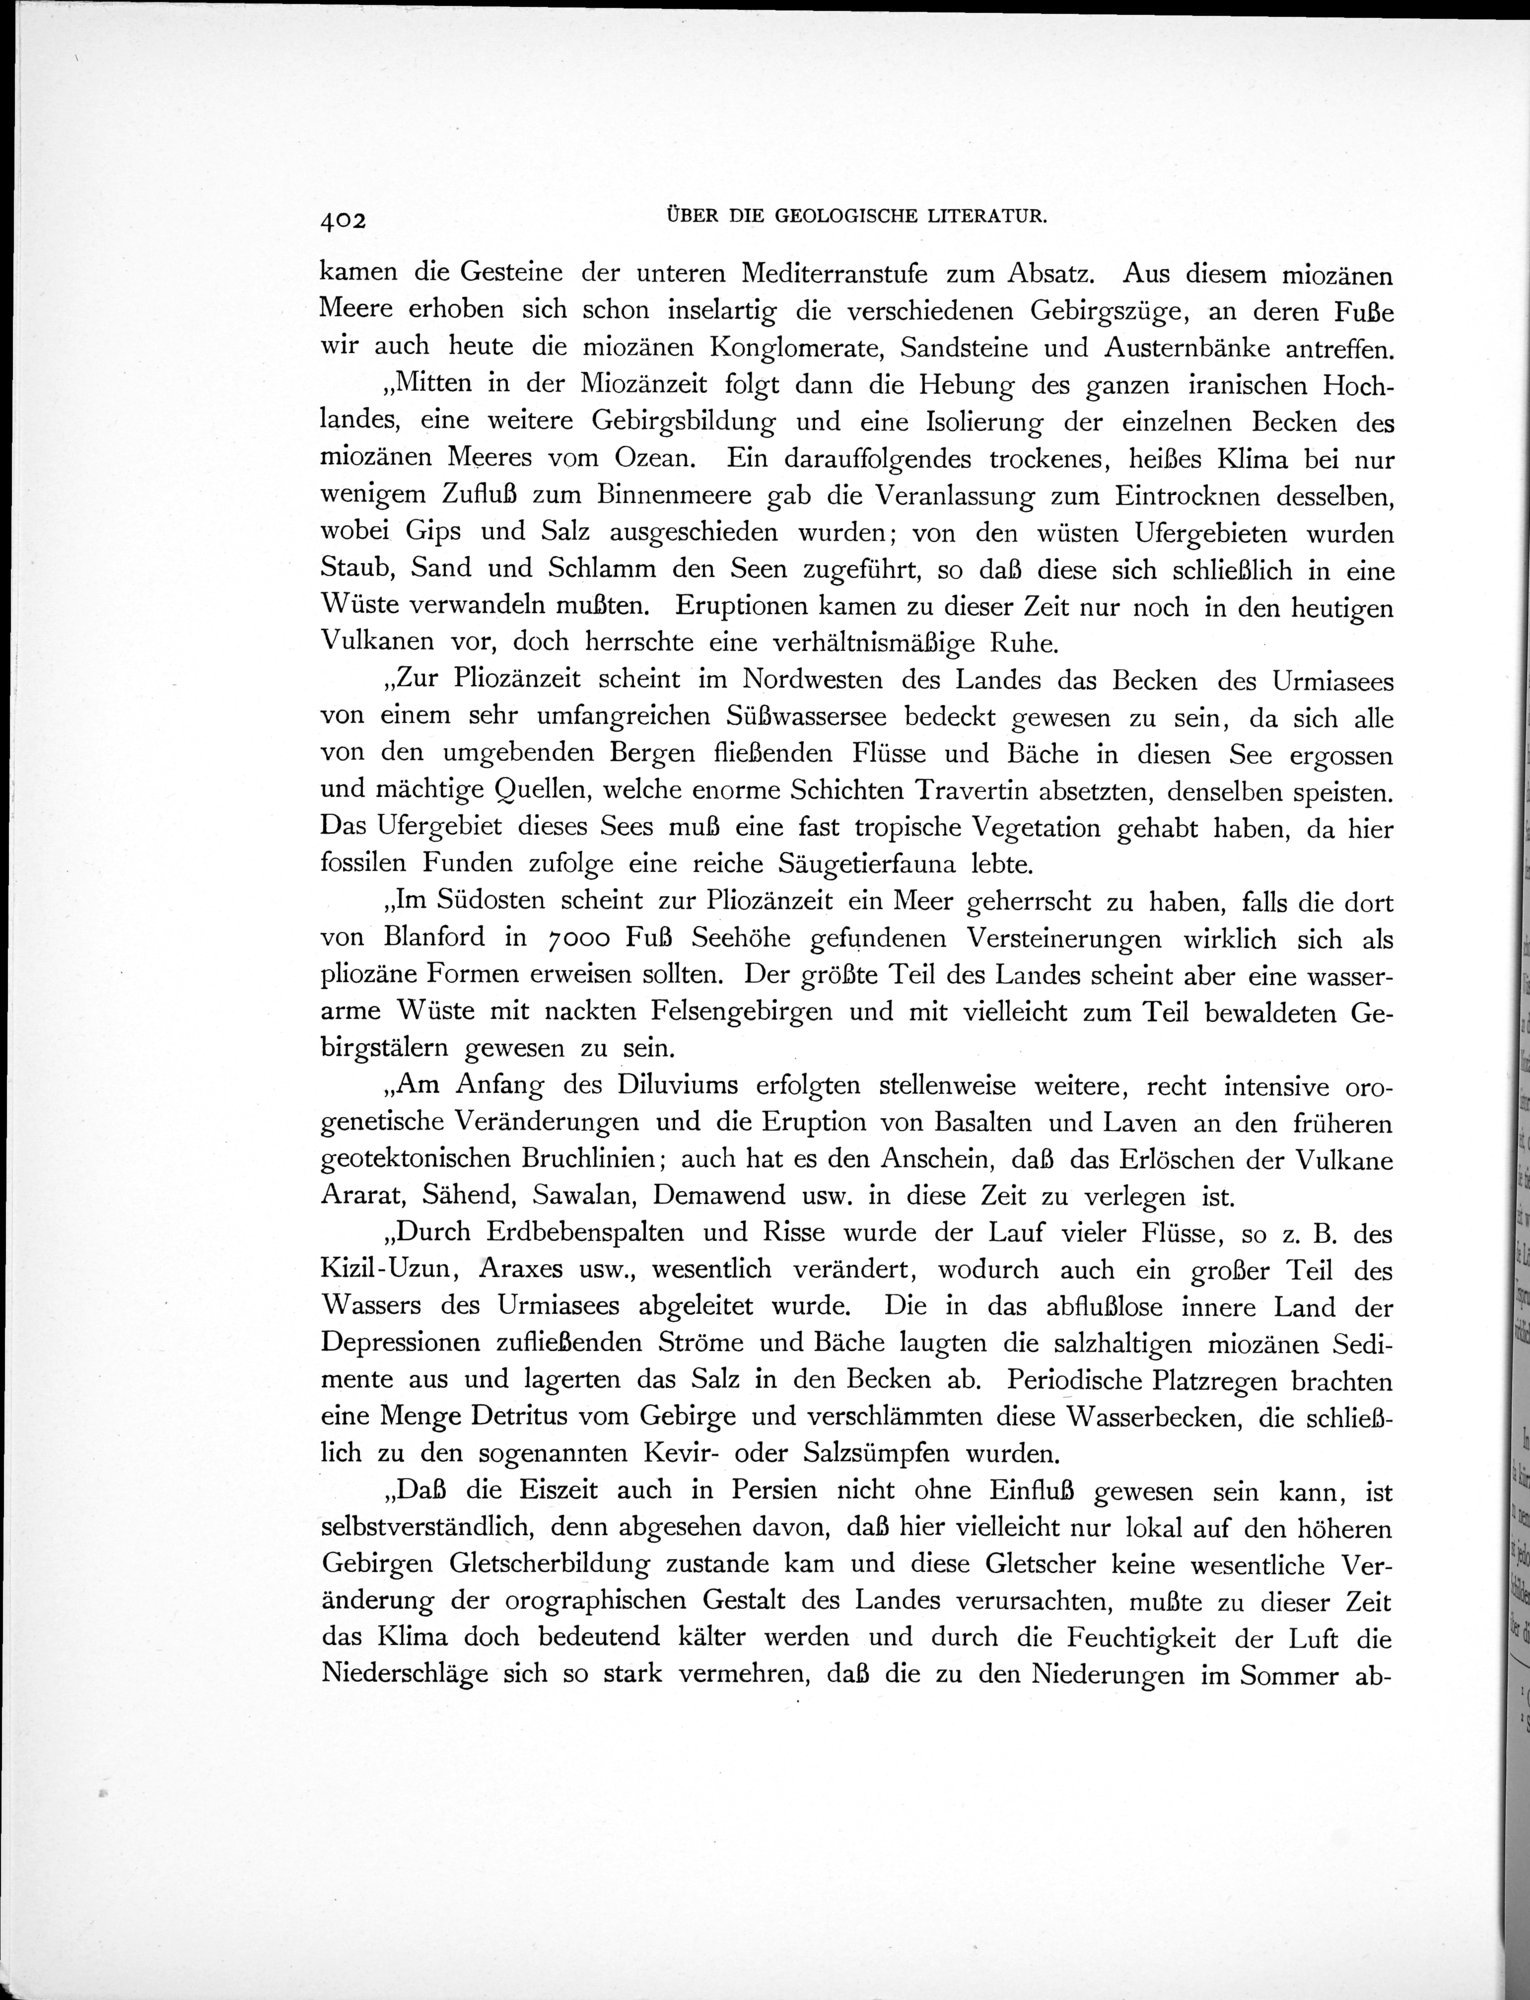 Eine Routenaufnahme durch Ostpersien : vol.2 / Page 472 (Grayscale High Resolution Image)